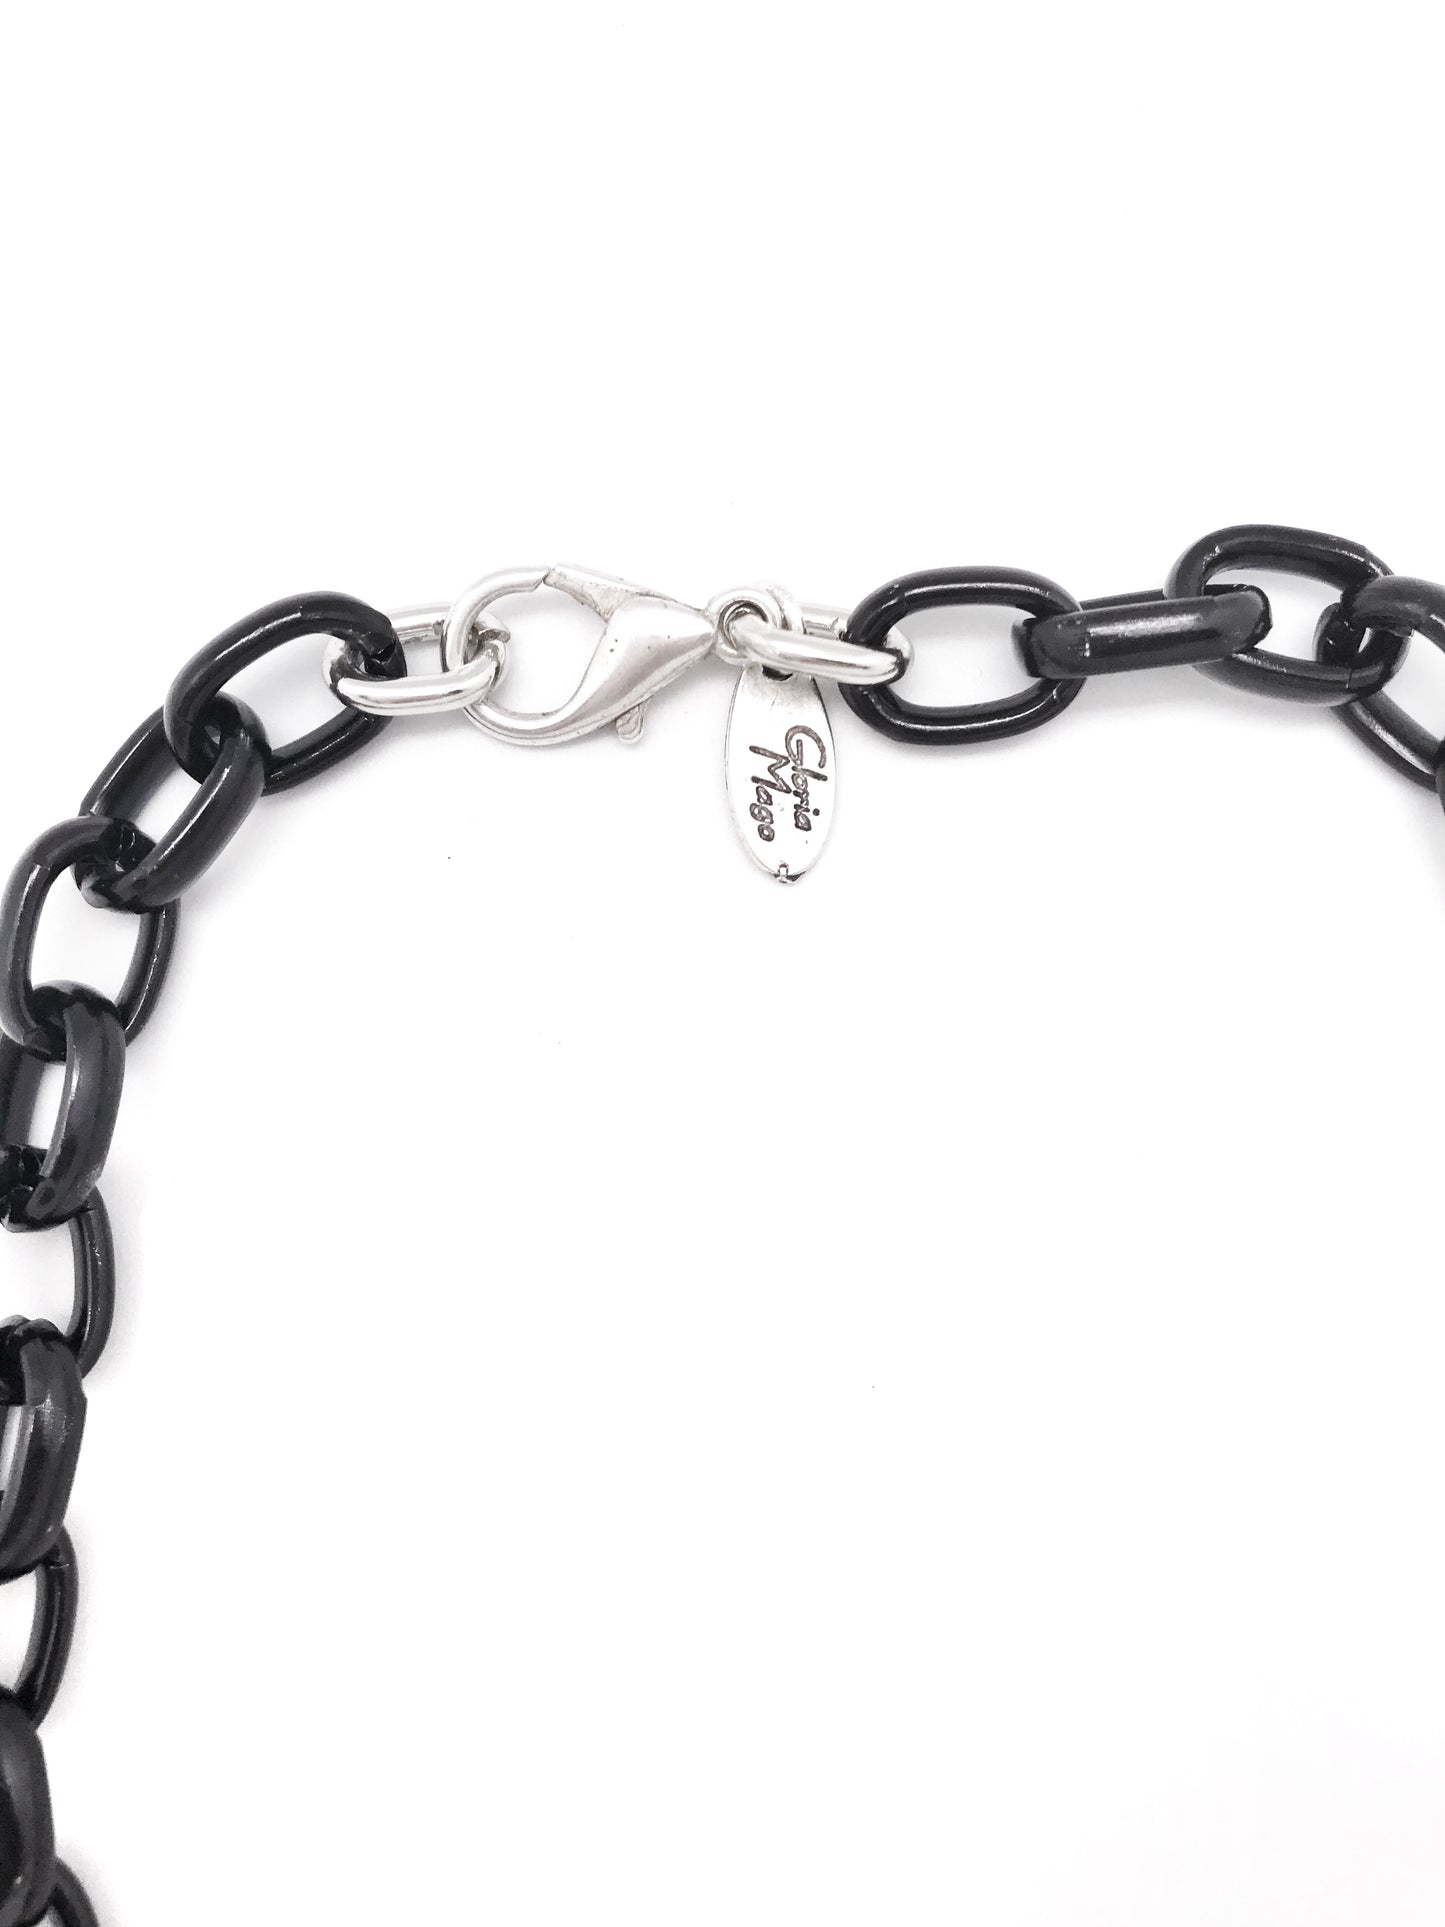 Gargantilla cadena negro - plata 40cm color